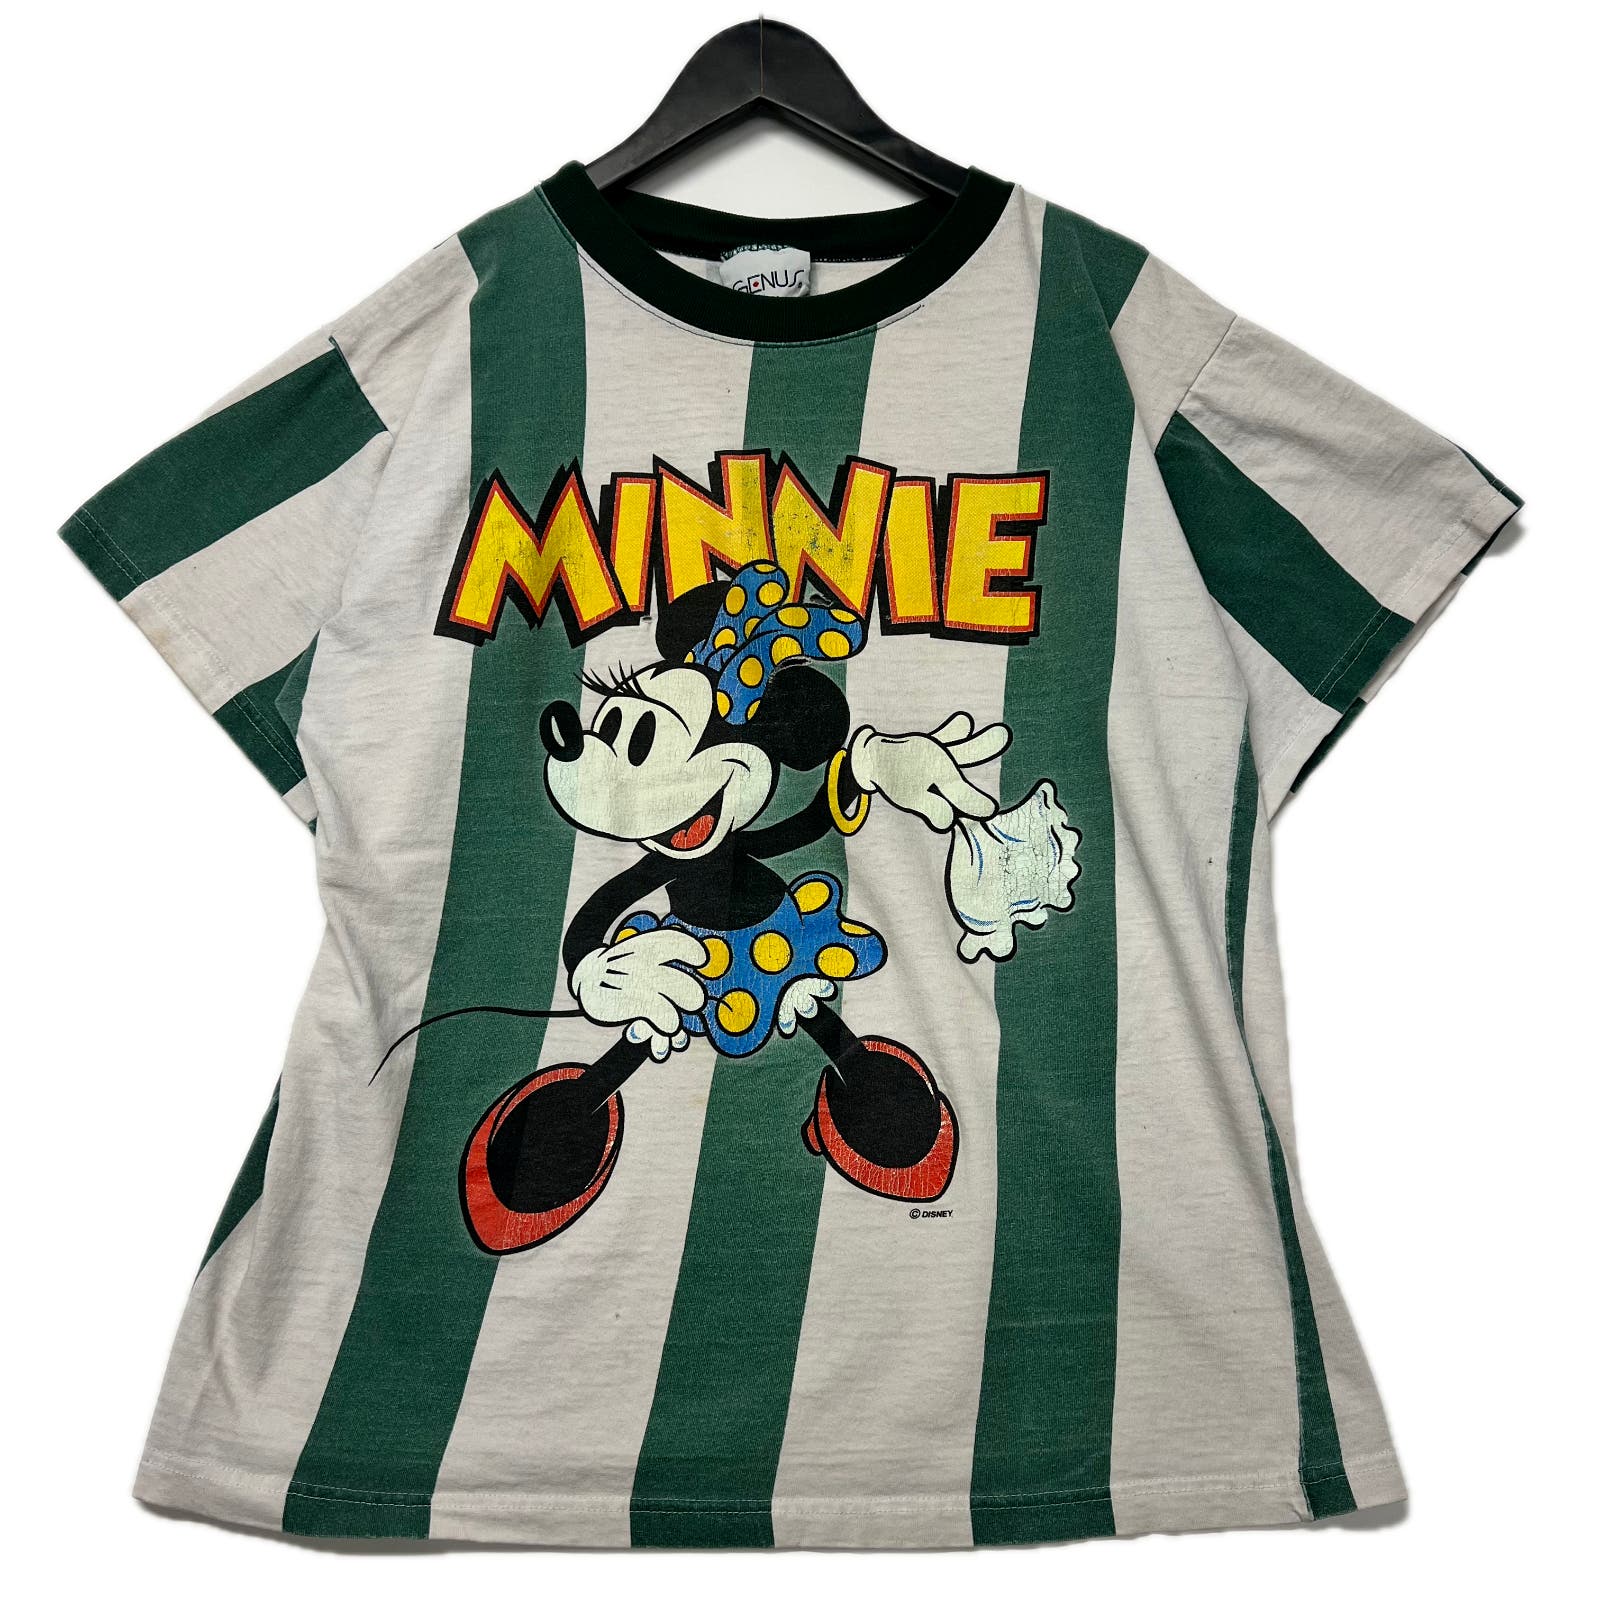 Vintage 90s Disney Minnie Mouse Stripped T-shirt Size M/L